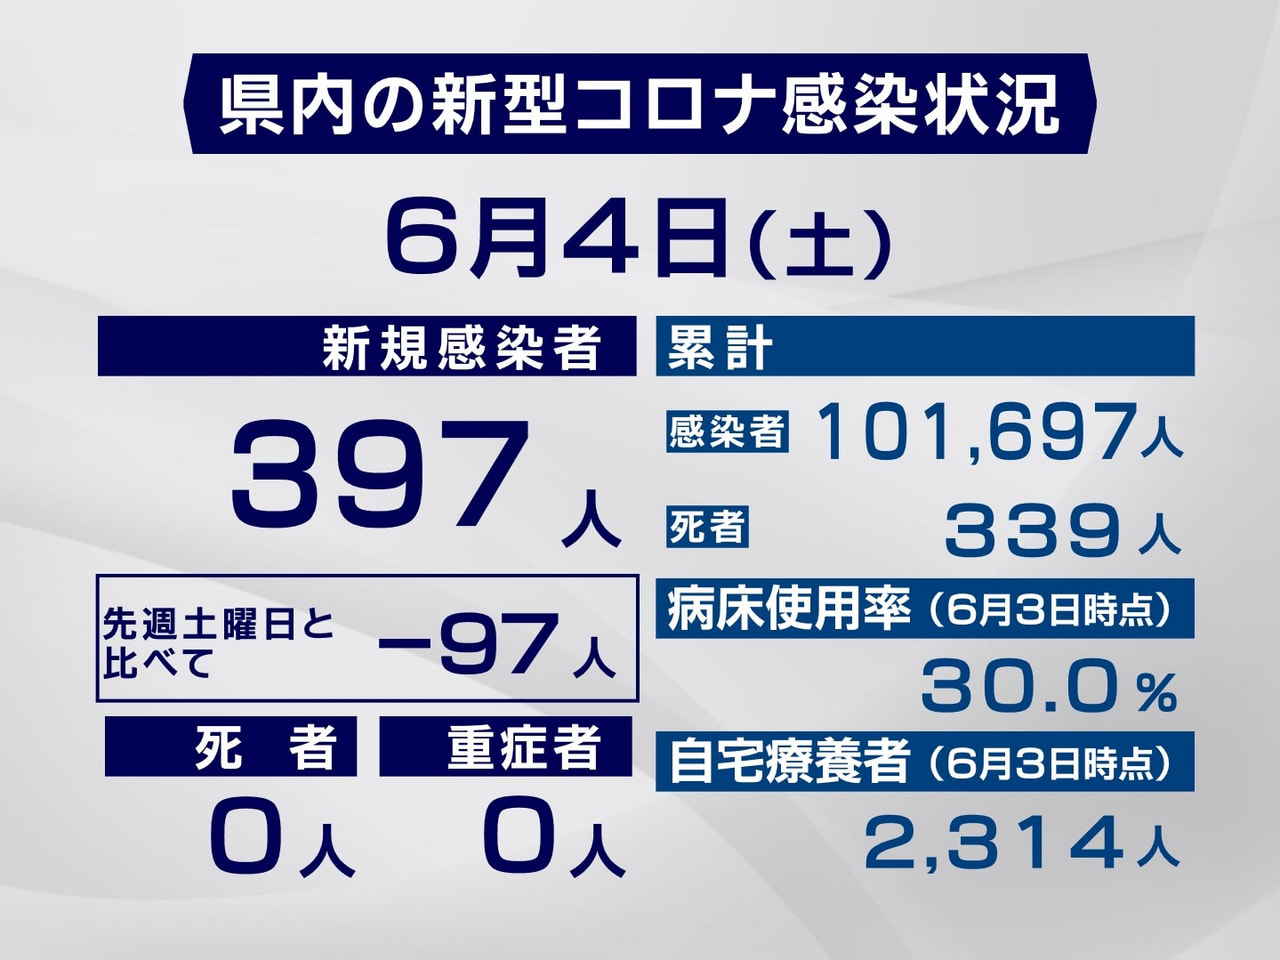 岐阜県は４日、新型コロナウイルスの新規感染者が３９７人確認されたと発表しました。...